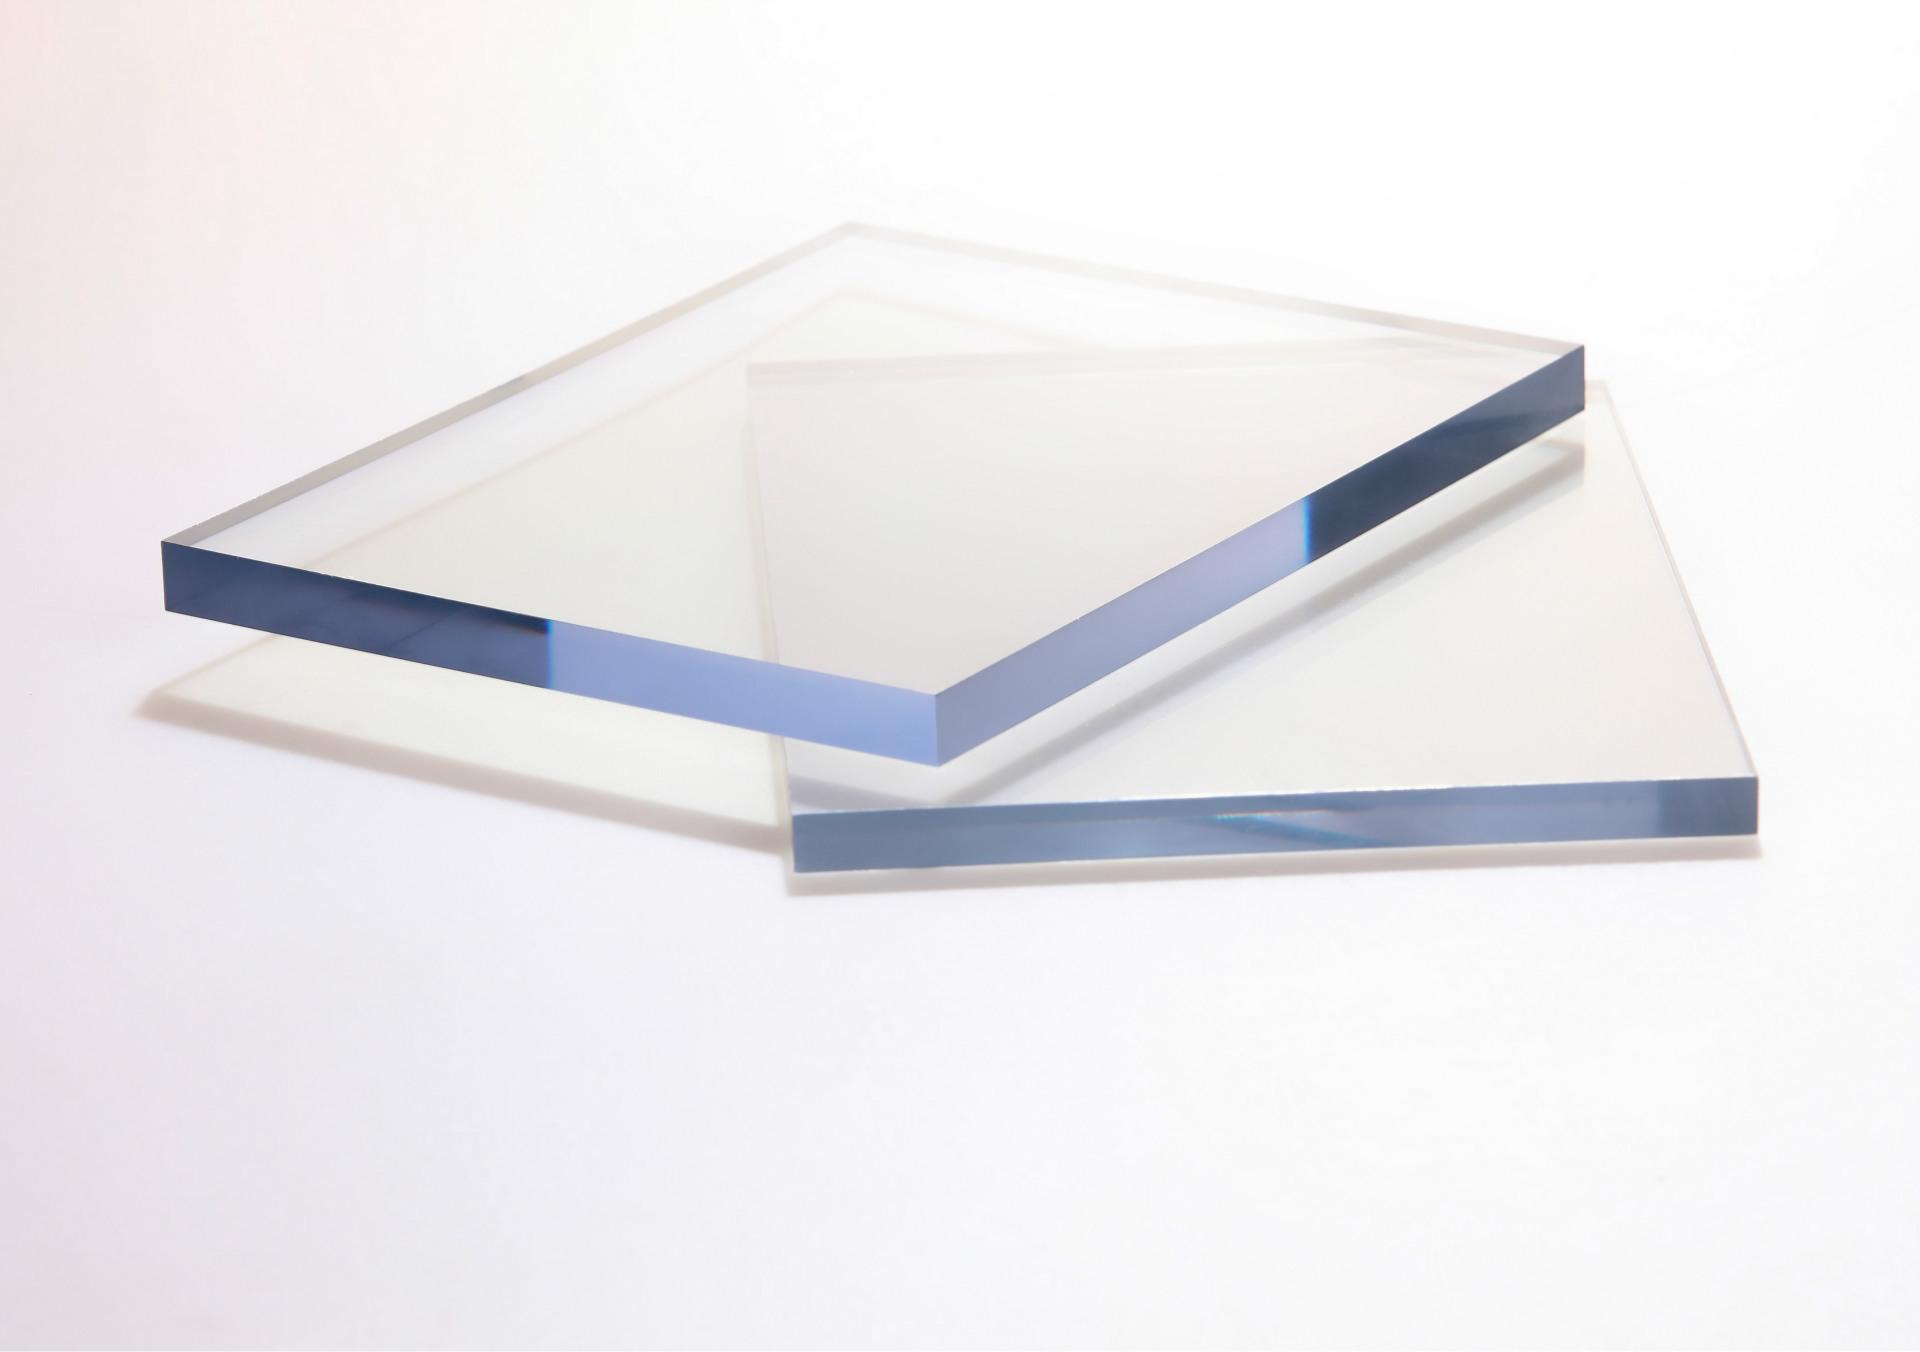 Tablero De PC De Reemplazo De Vidrio Transparente De Plástico Recubierto Para Todo Tipo De Propósitos De Techado